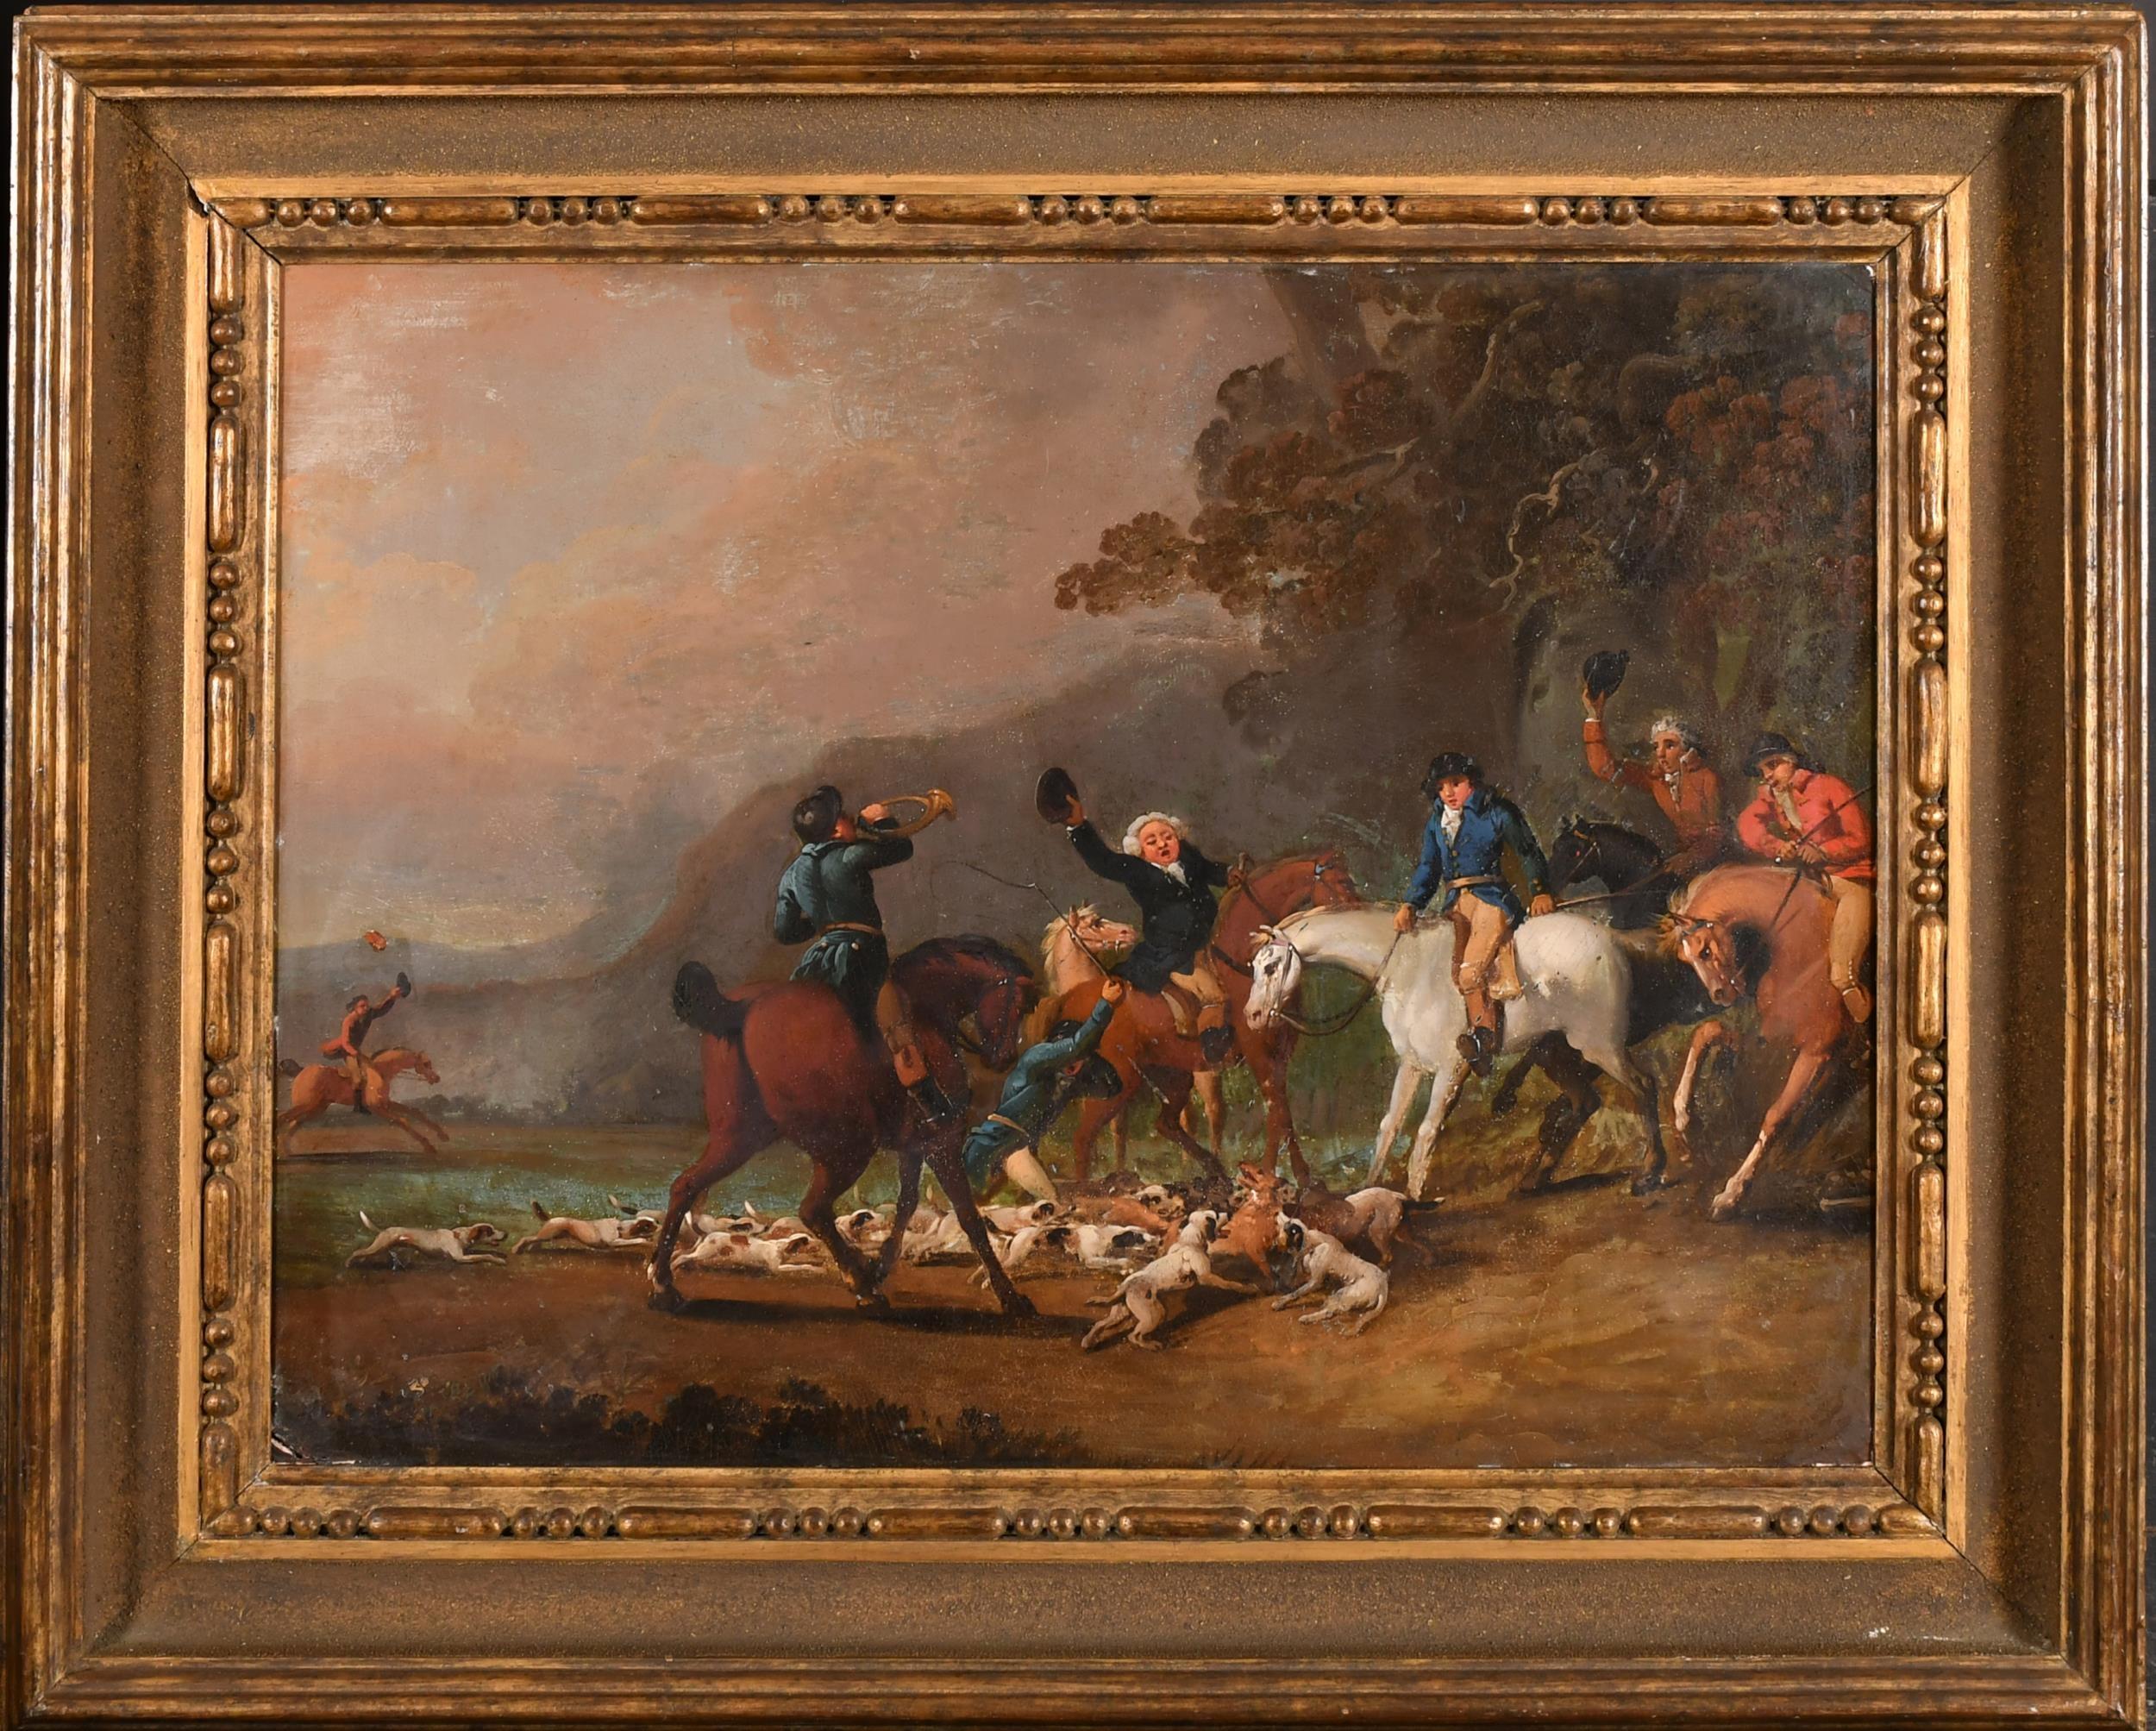 Englische Sportkunst des 18. Jahrhunderts, Ölgemälde, Jagdsszene, Reiter und Pferde